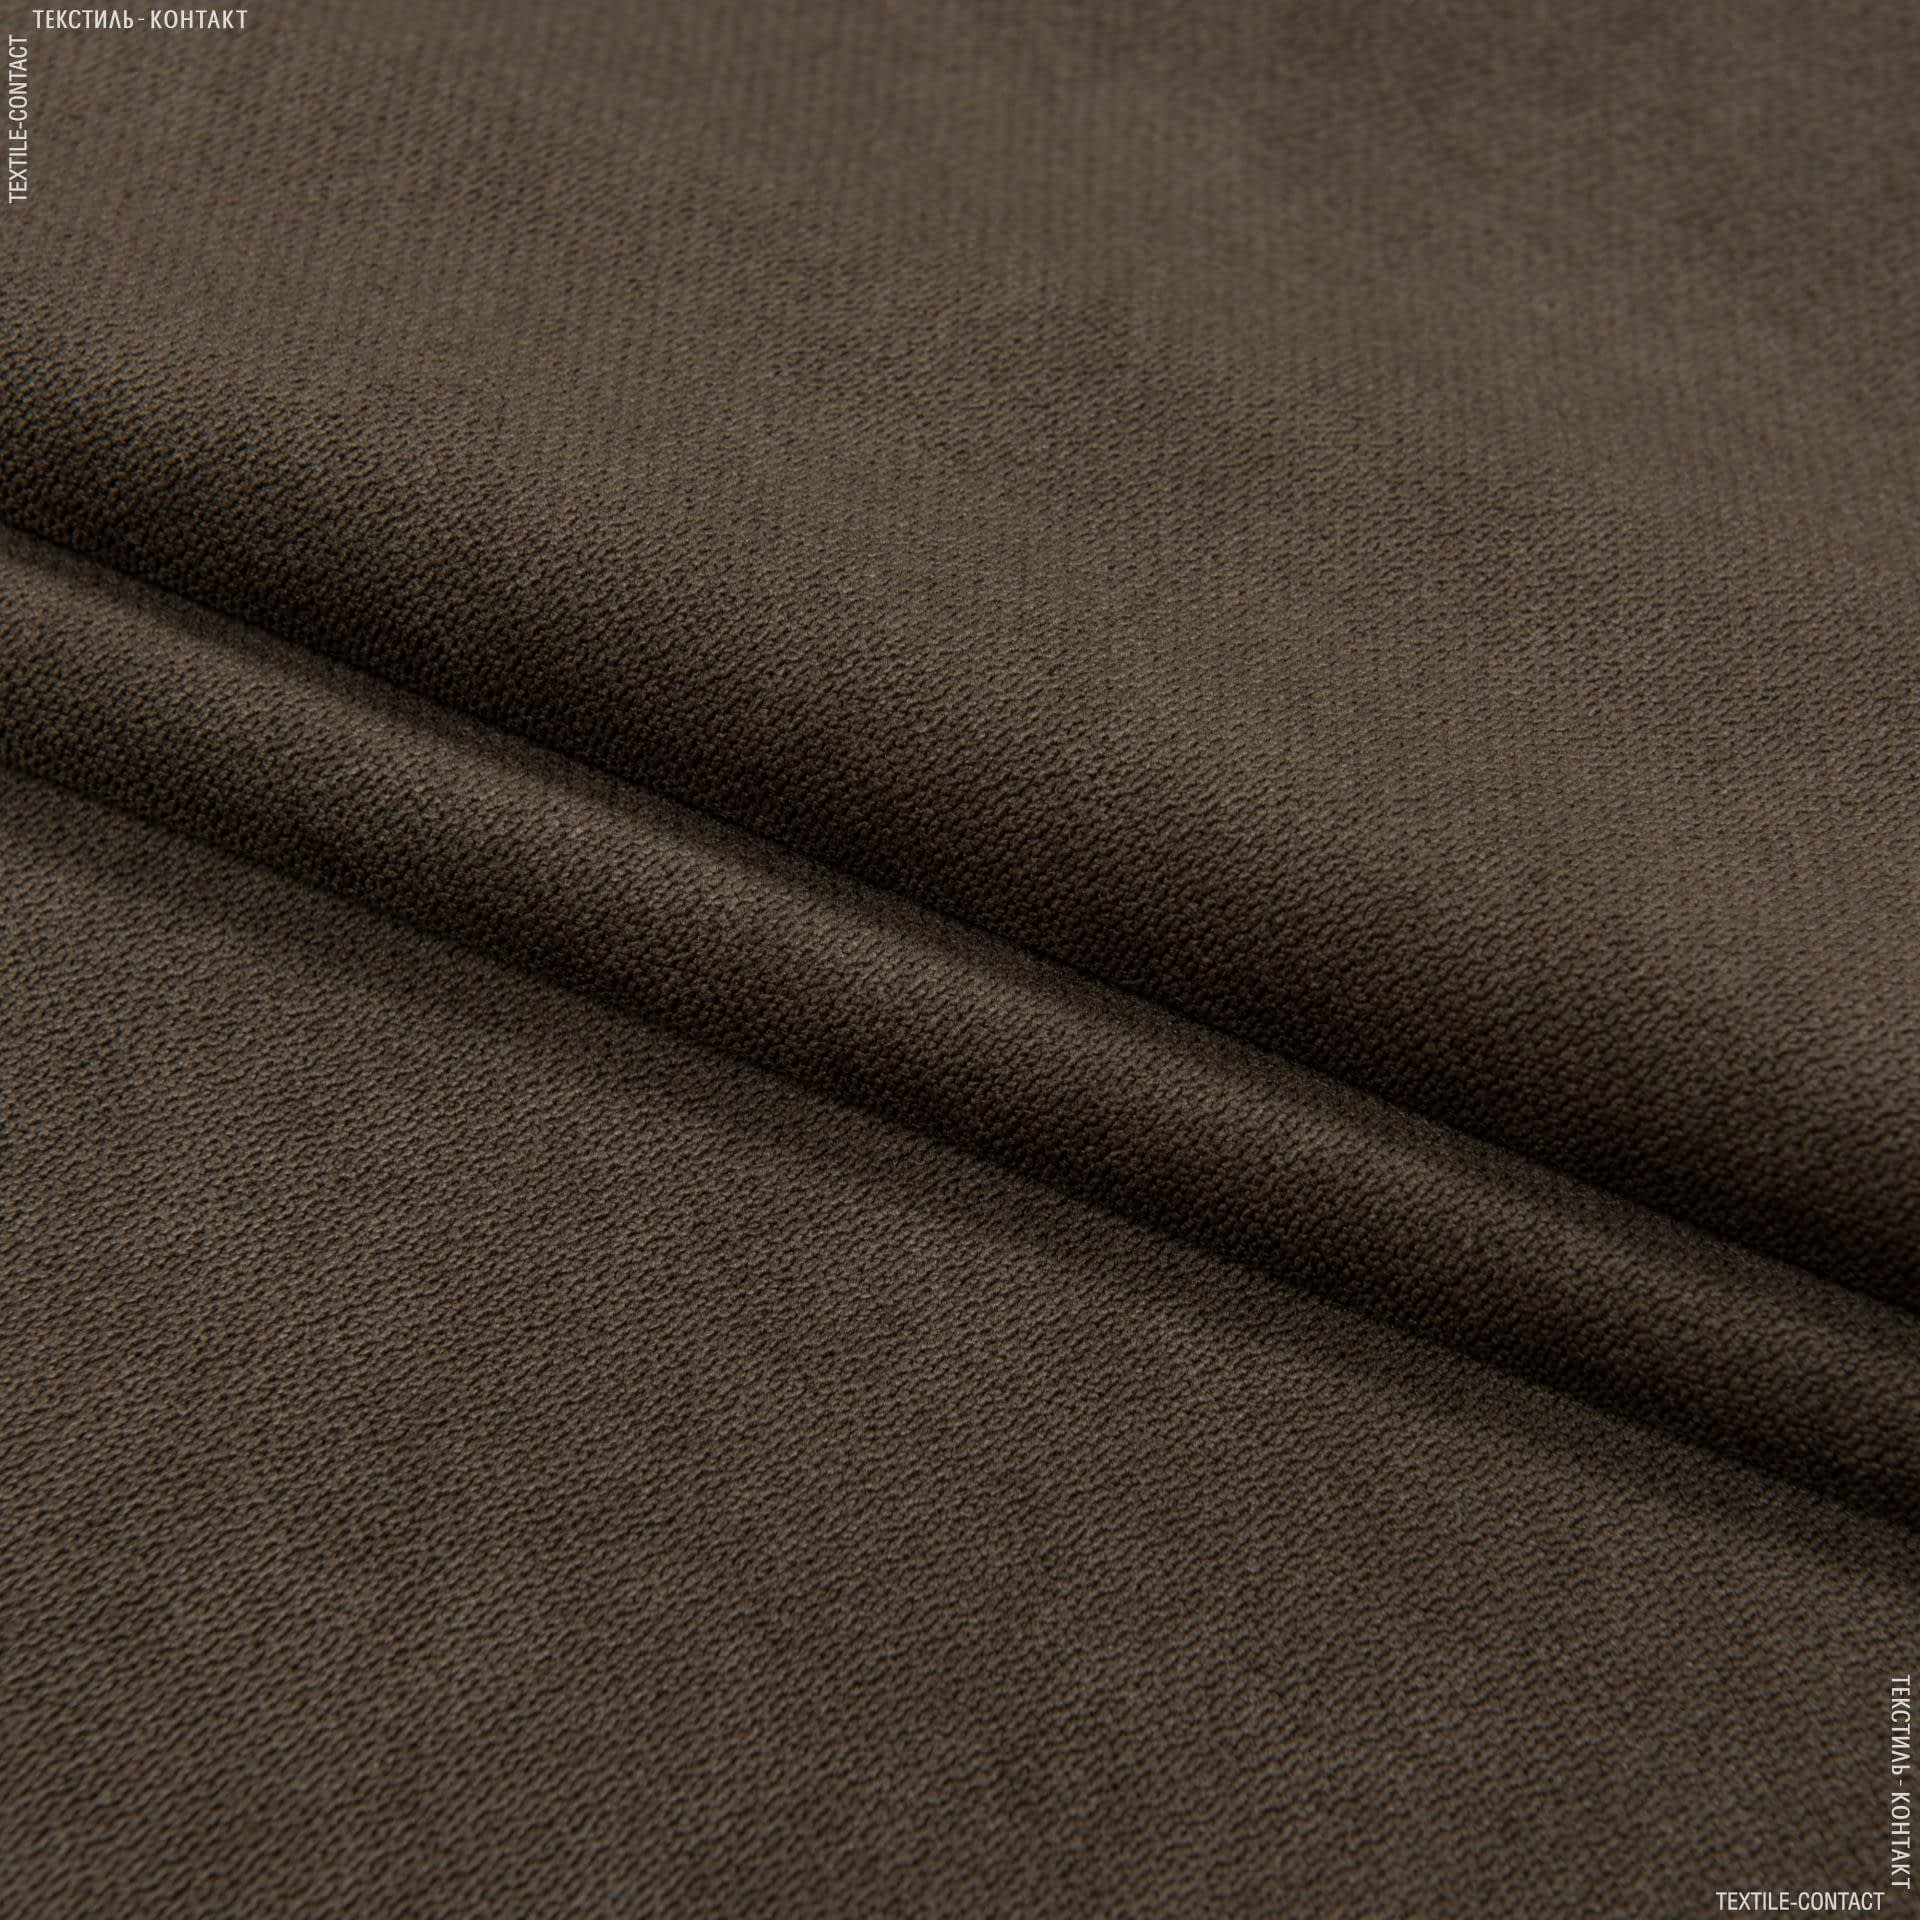 Ткани для мебели - Велюр будапешт/budapest т.коричневый